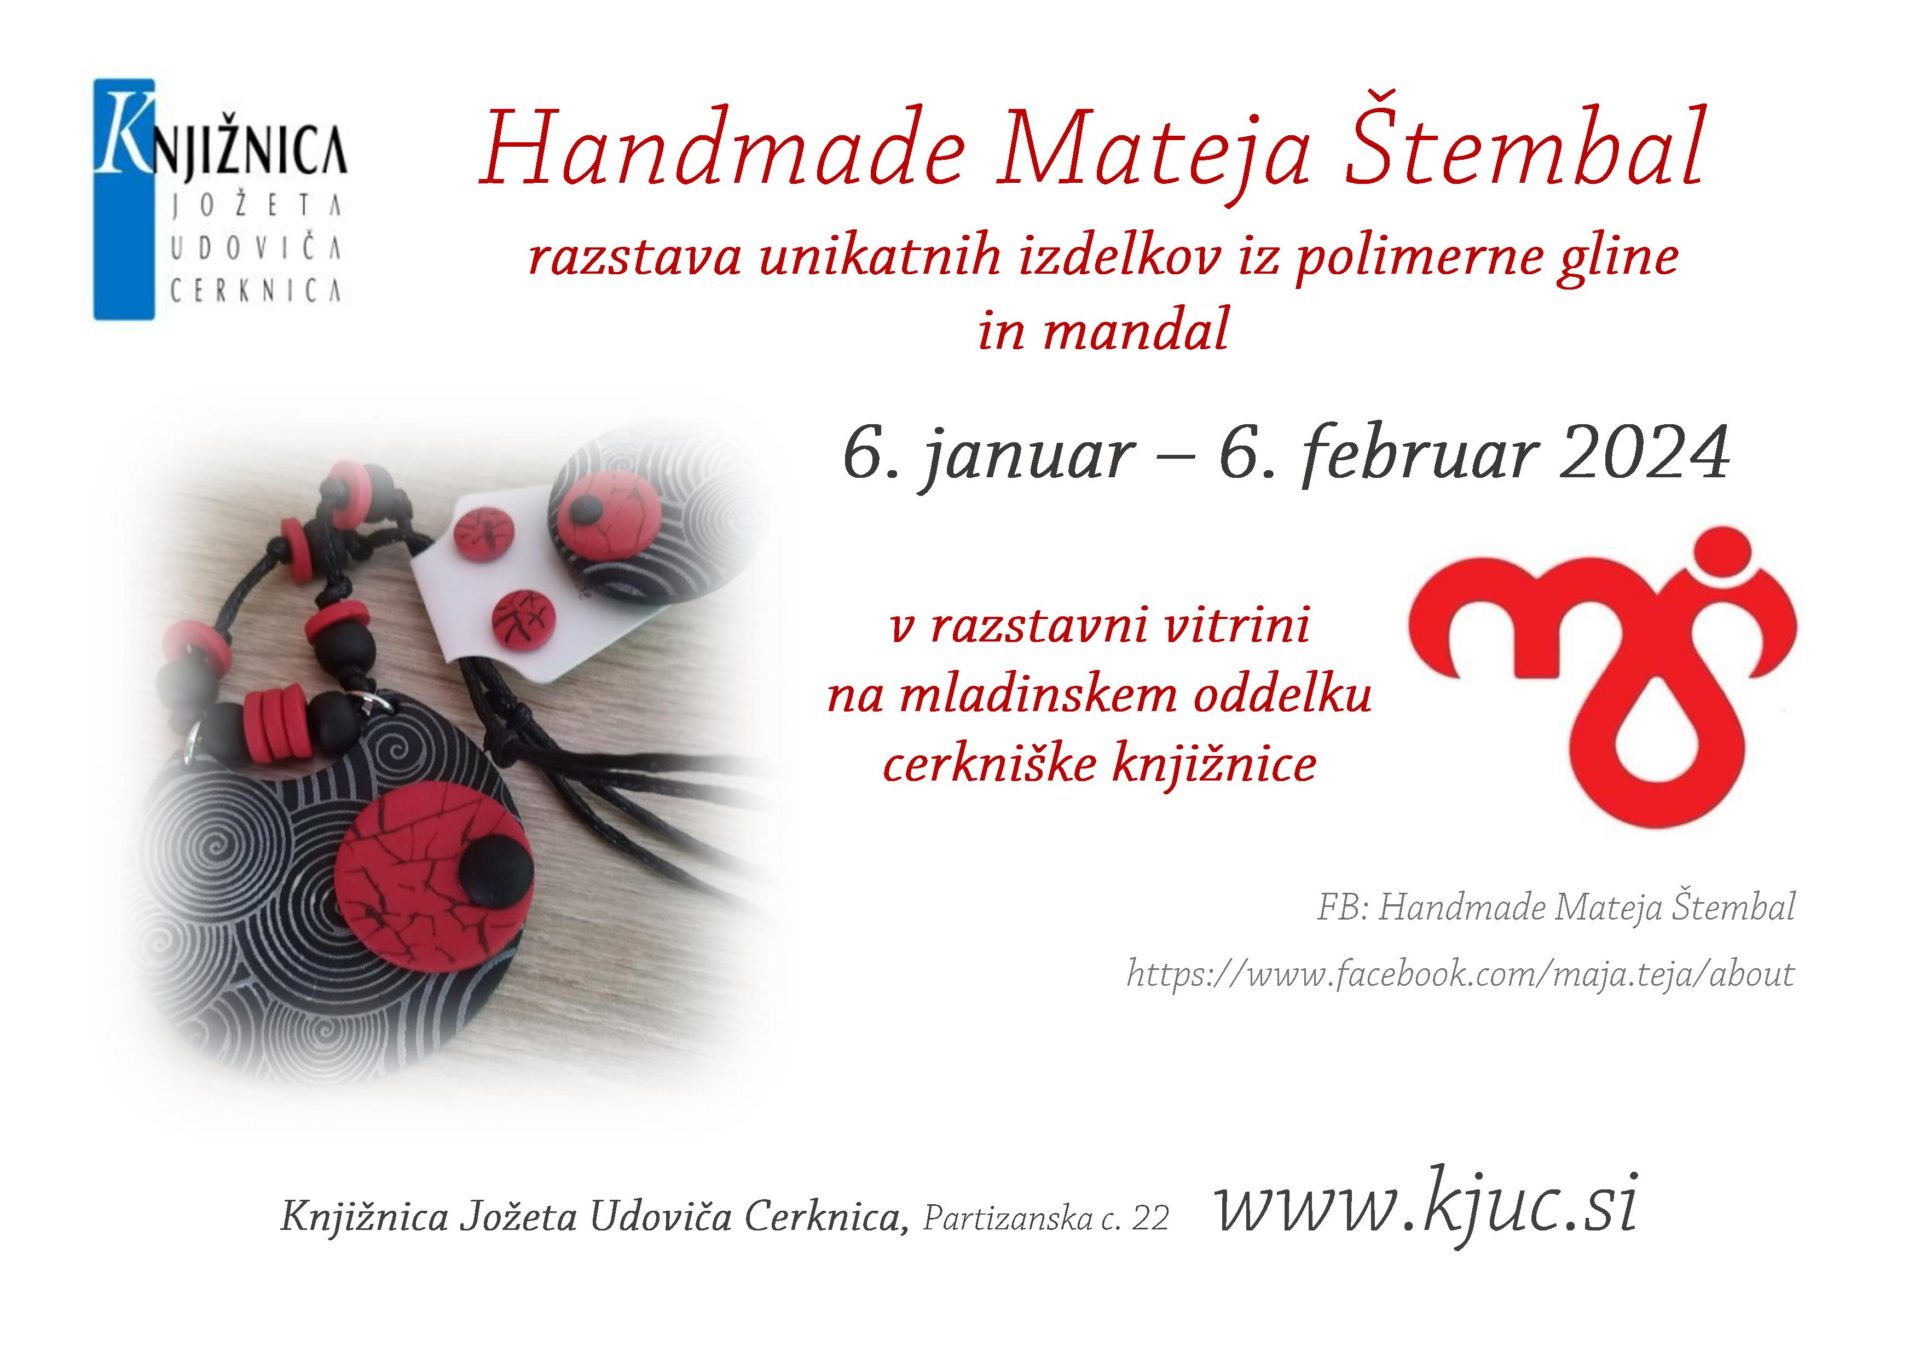 Handmade Mateja Stembal page 001 - Handmade Mateja Štembal - razstava unikatnih izdelkov iz polimerne gline in mandal